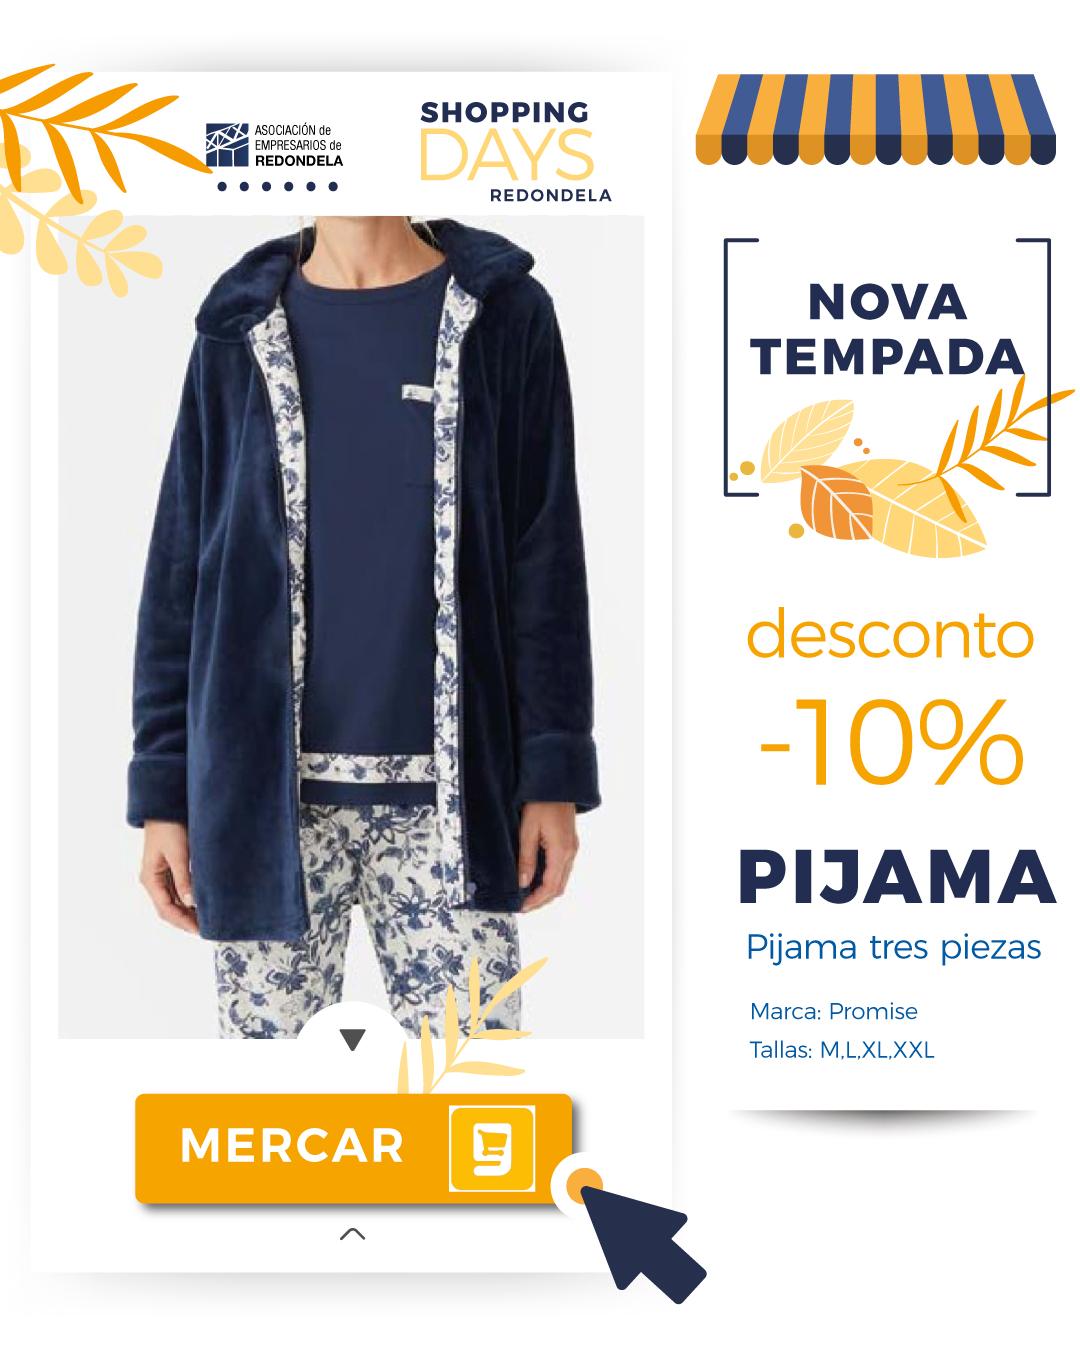 ARTICULO DE PRUEBA Pijama